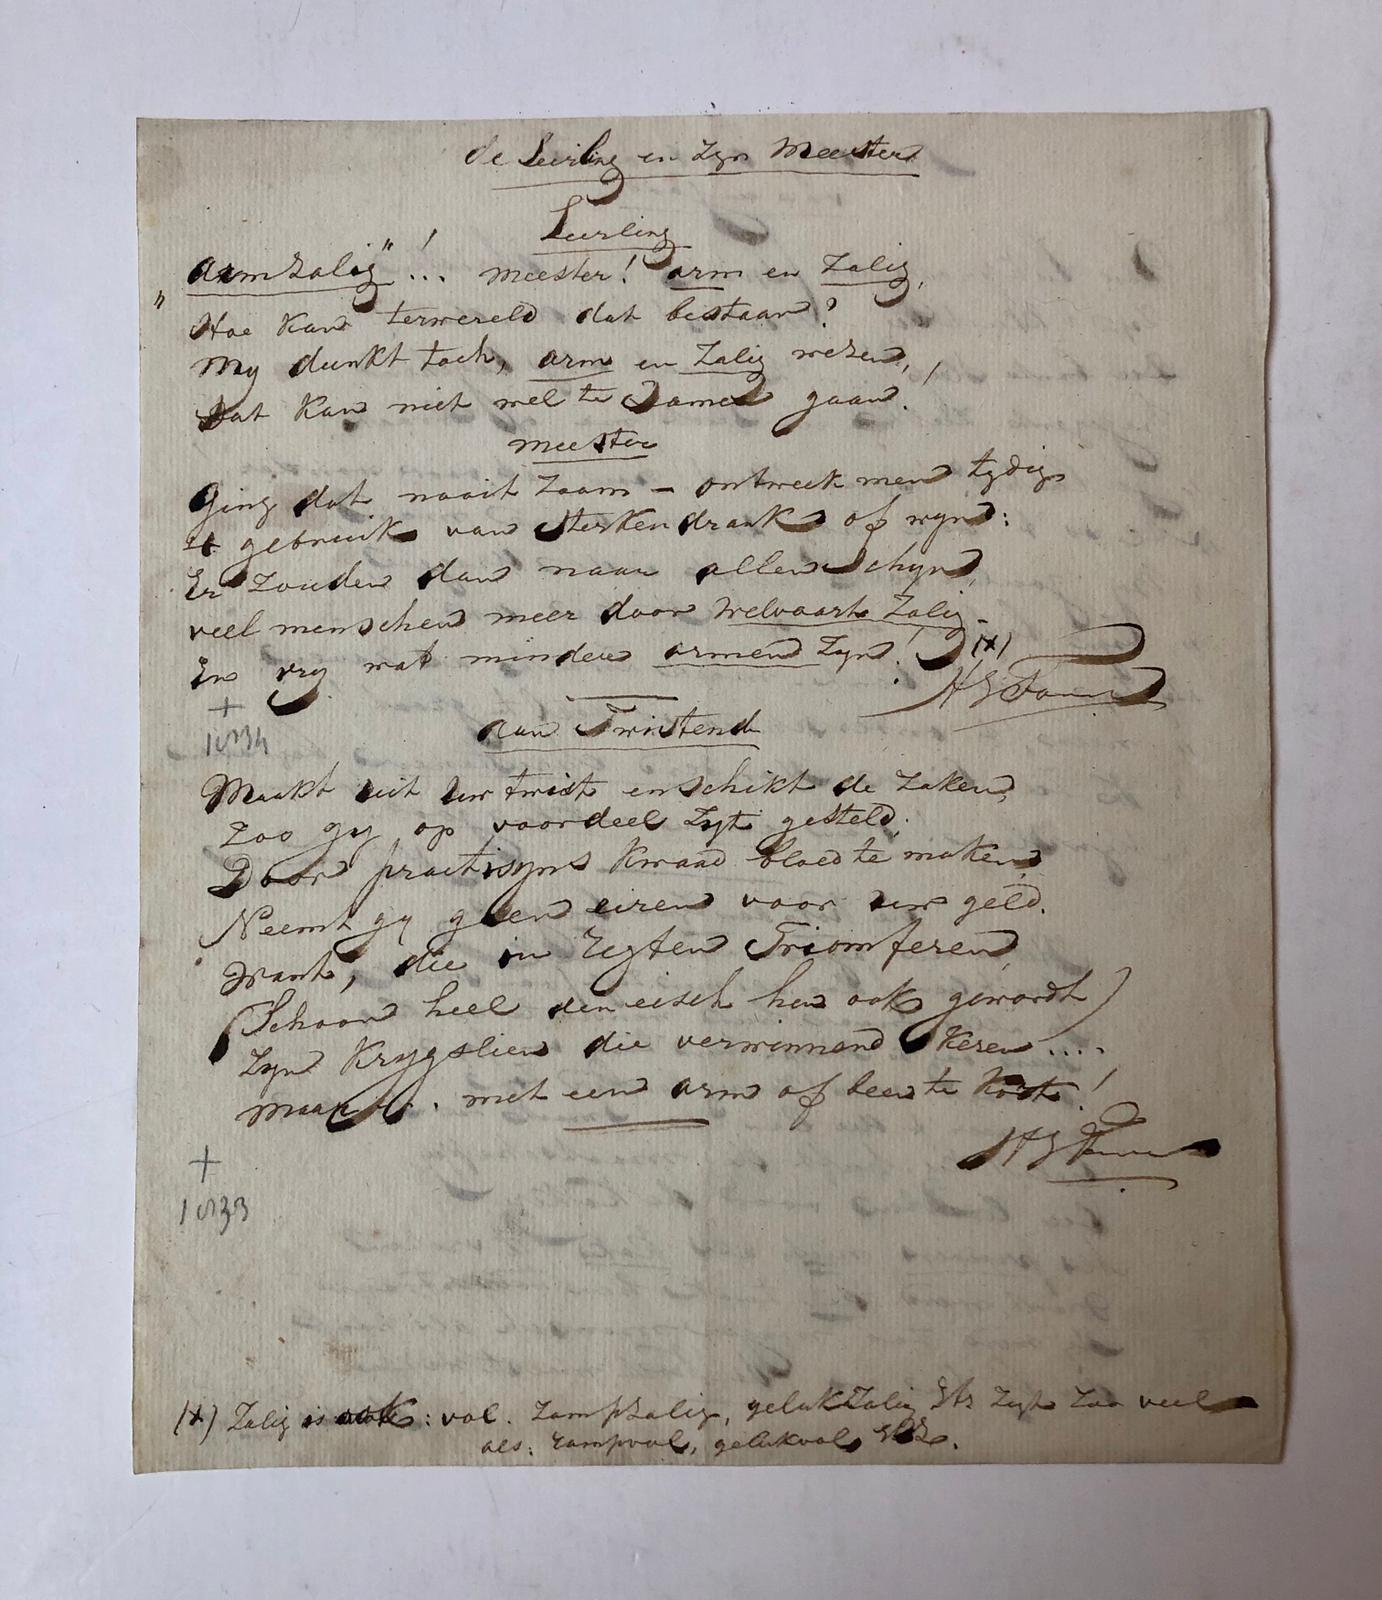  - [Manuscript FOPPE] Vier eigenhandig geschreven gedichten door H.J. Foppe, 1834 en 1835. Folio, 11 p.